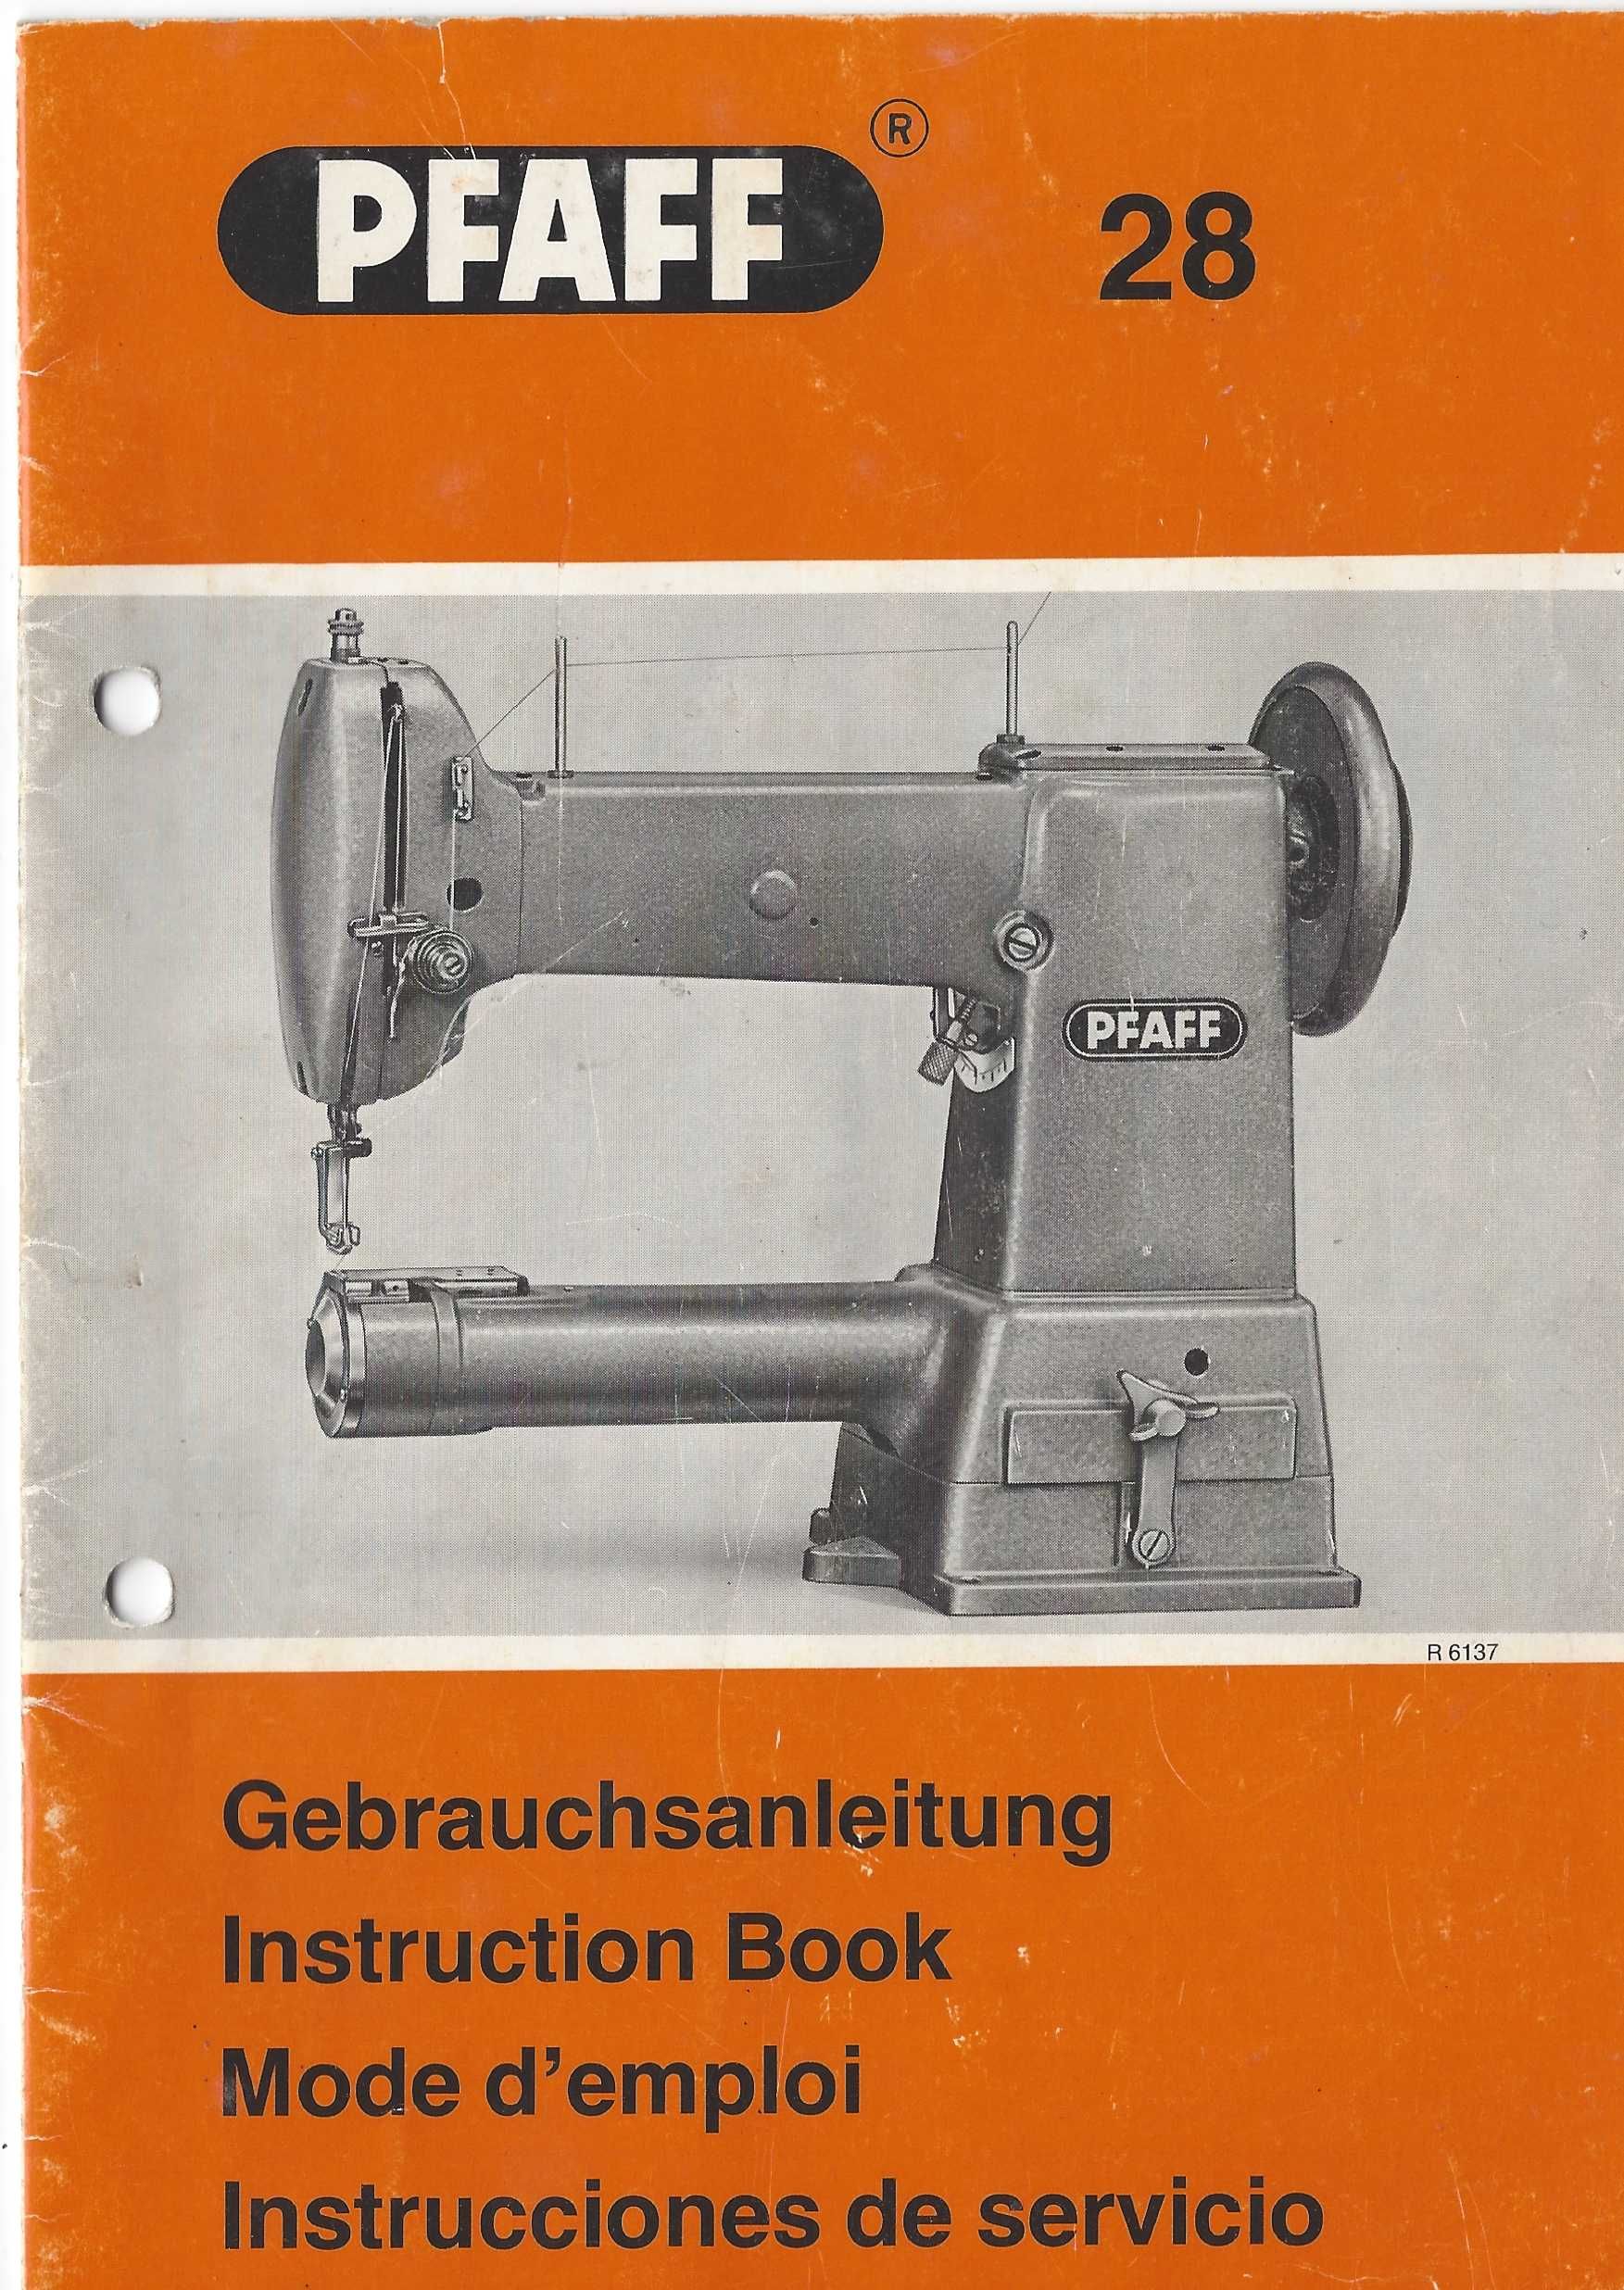 Máquina de costura Pfaff mod. 28/190, para coser peles grossas